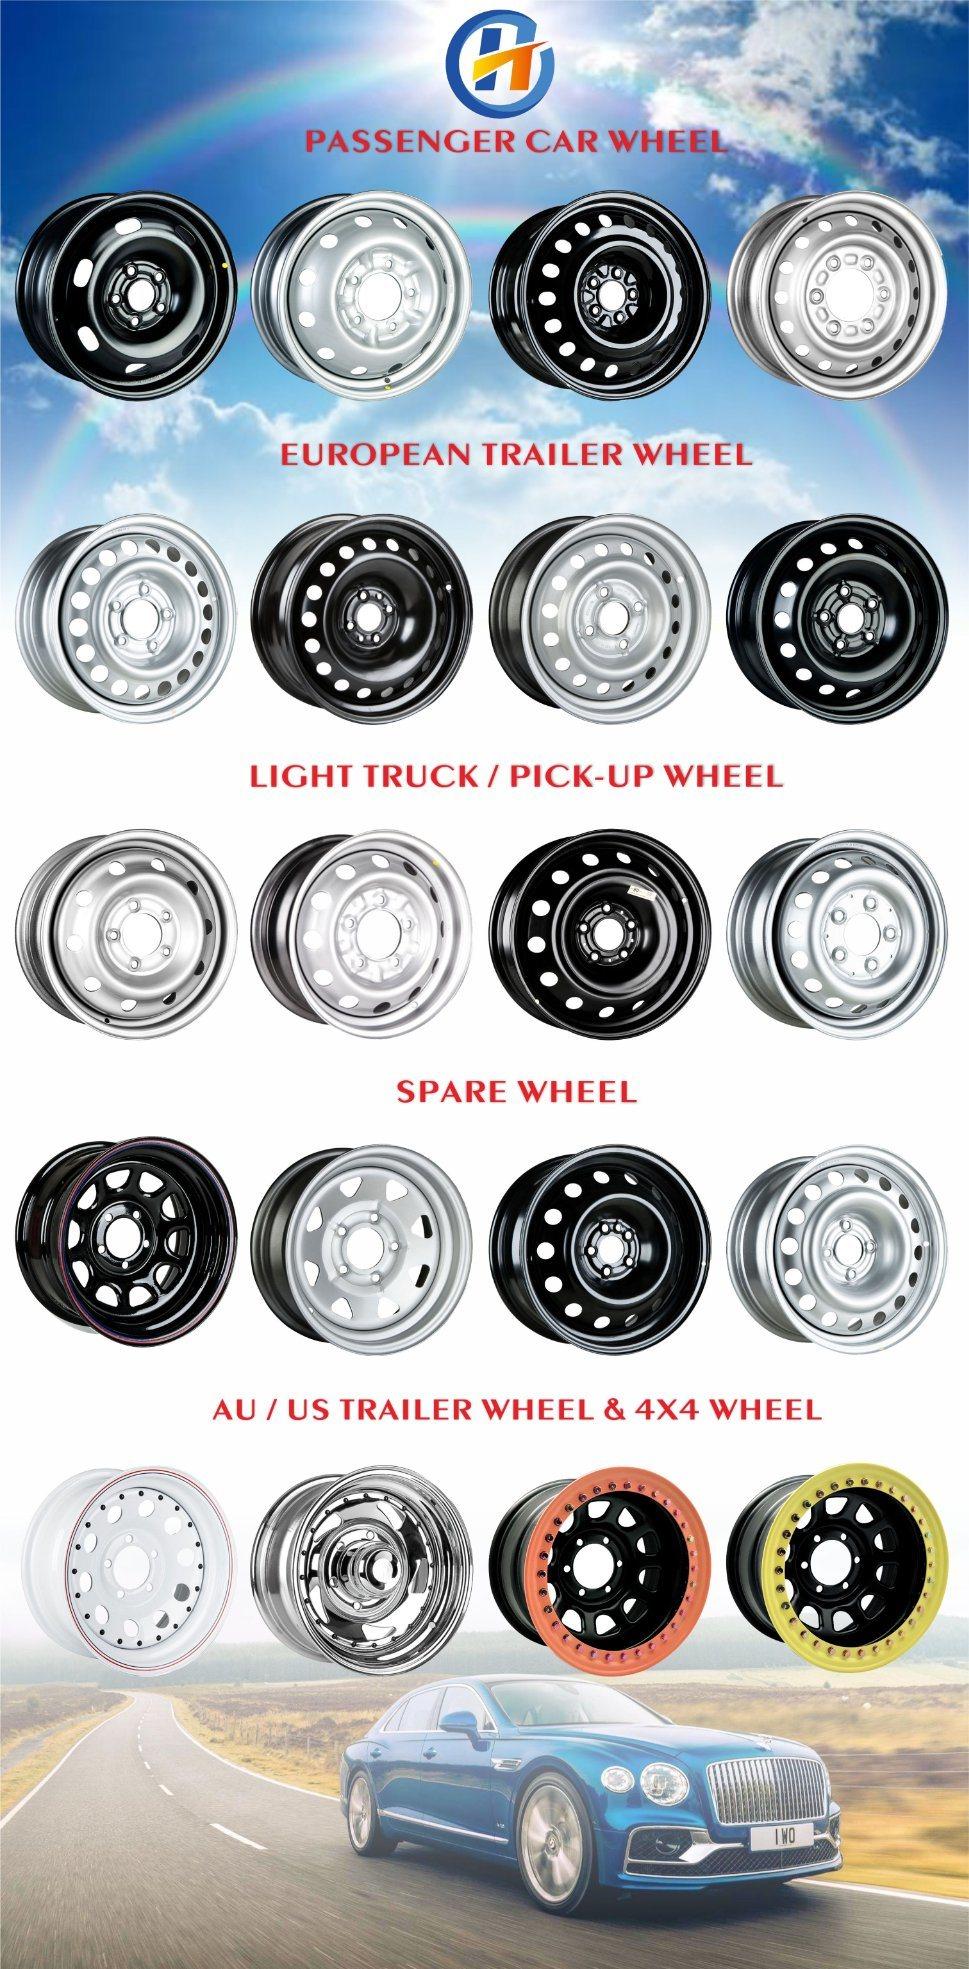 H&T Wheel 554202 15X5.5 4X100 15 Inch Black Steel Rim for Passenger Car